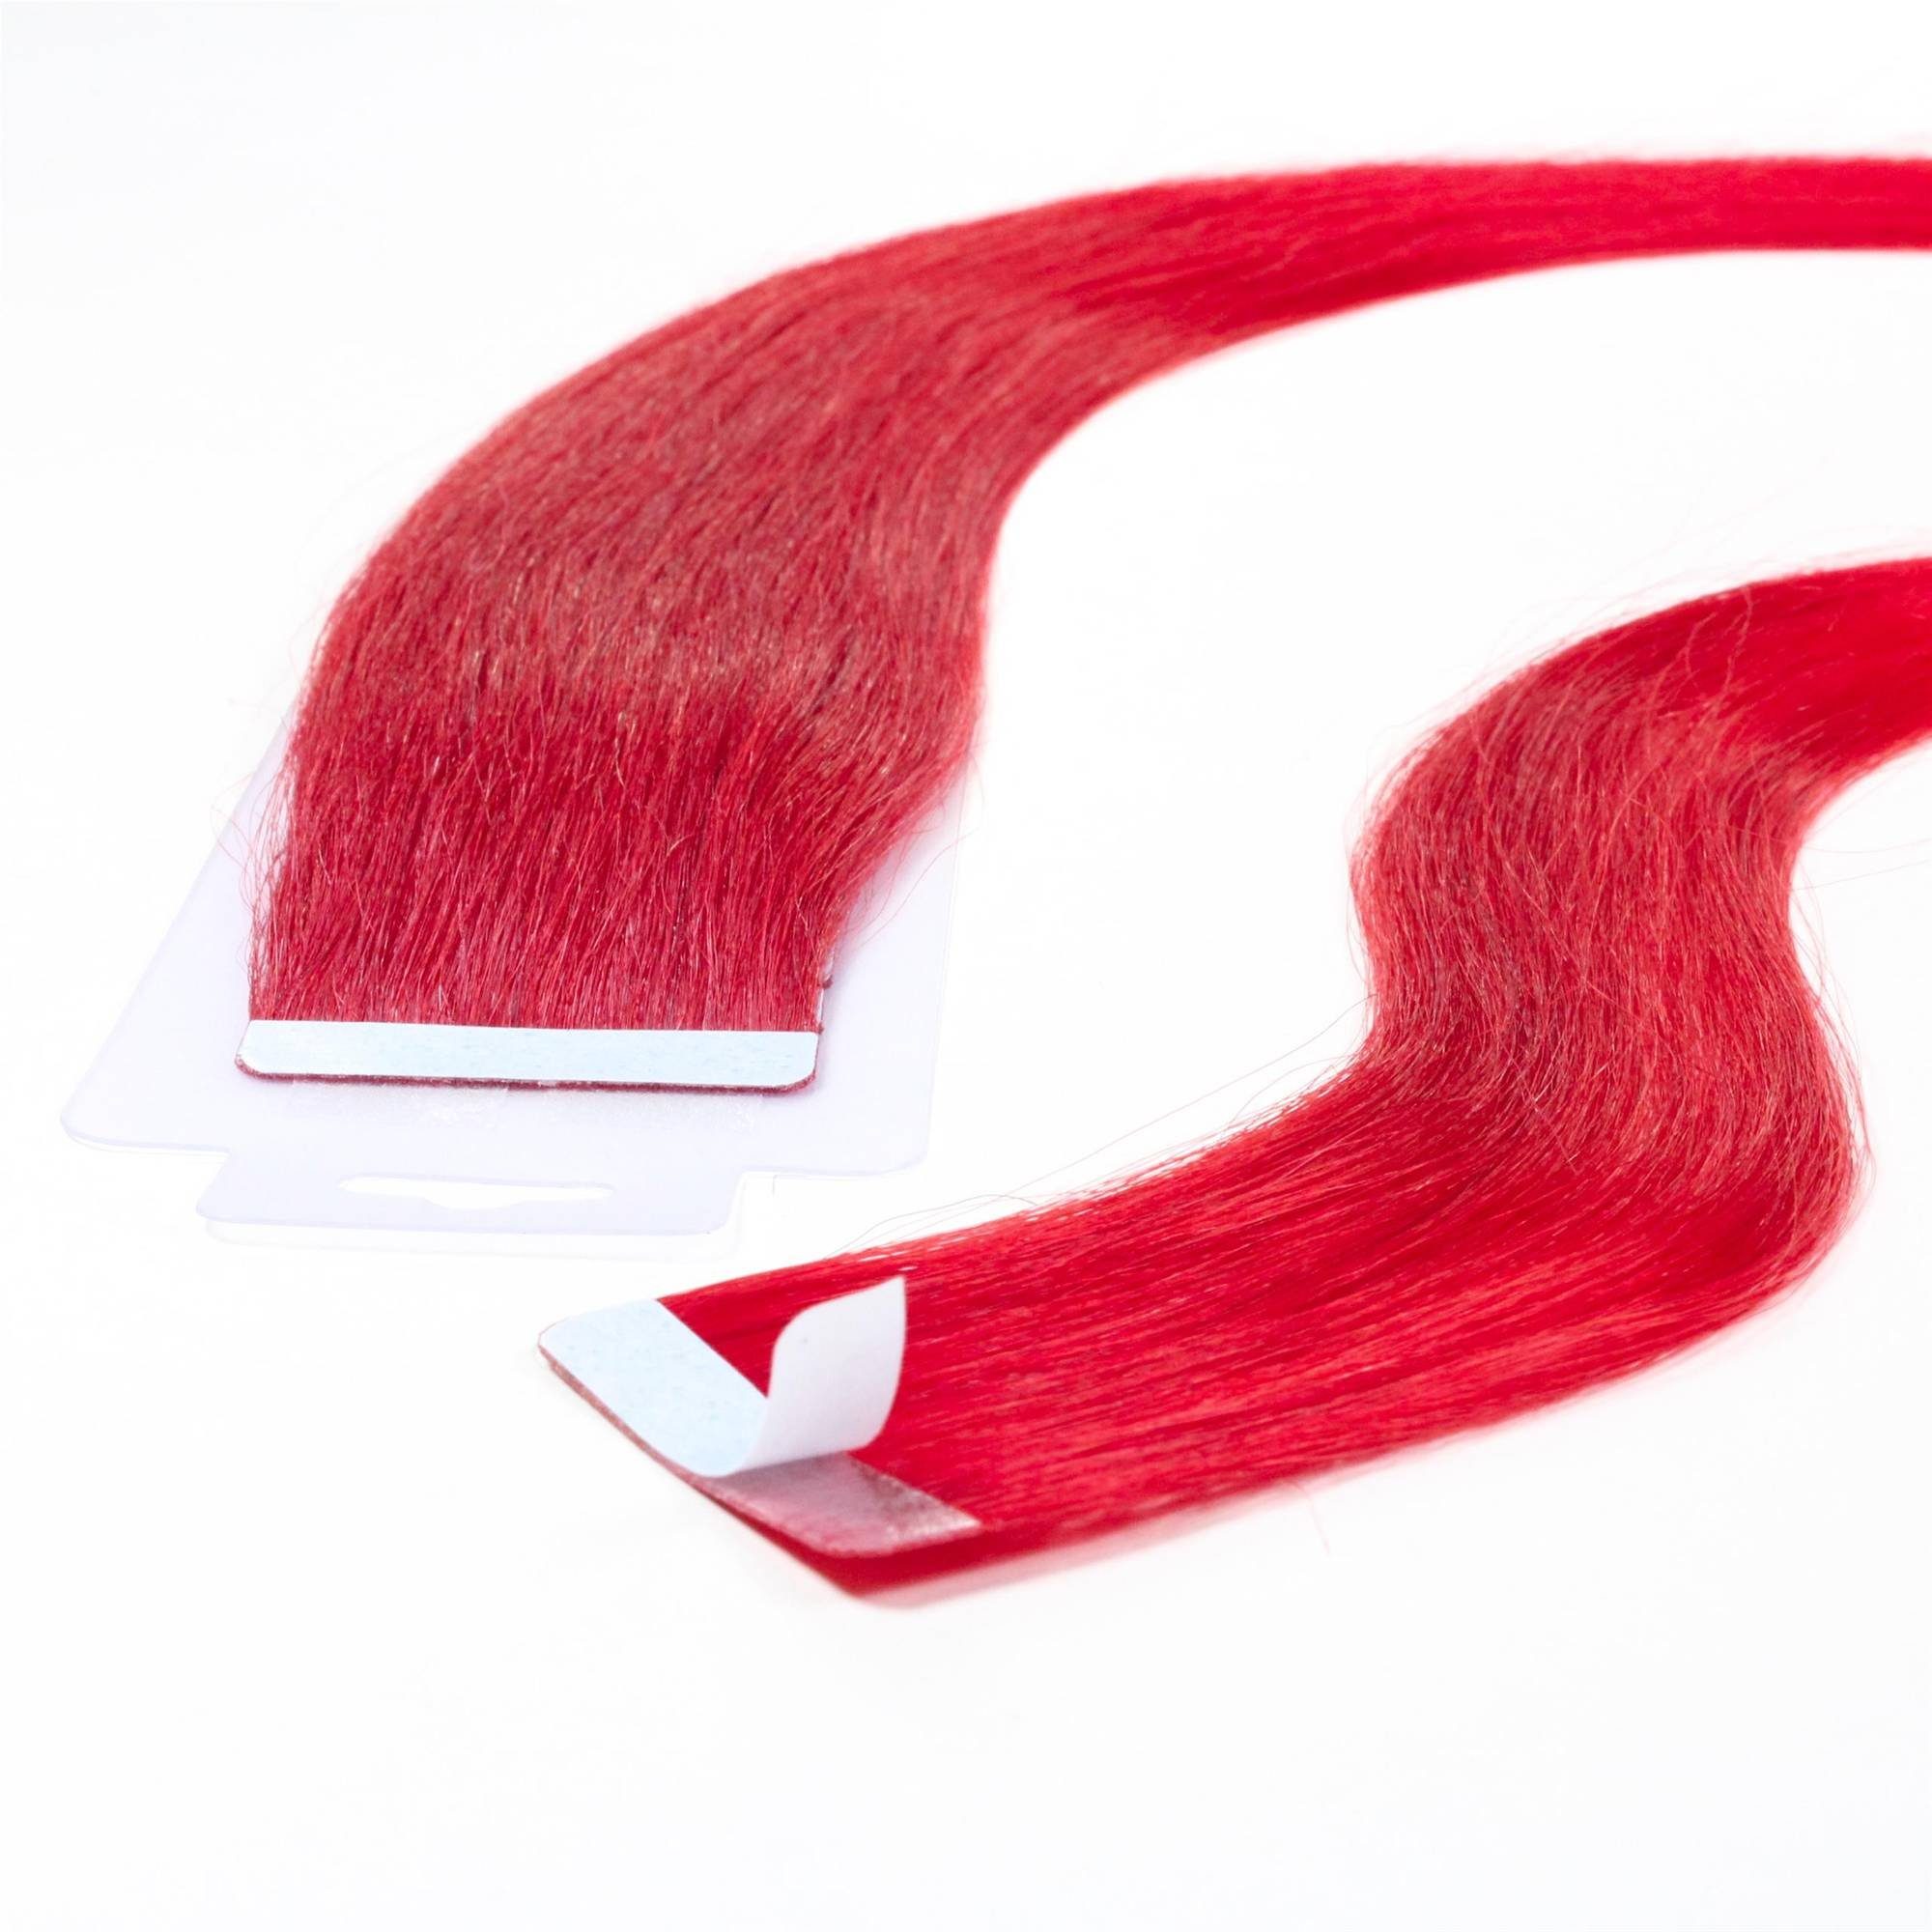 hair2heart Echthaar-Extension Tape Extensions glatt #0/44 Rot-Intensiv 40cm | Haarverlängerungen